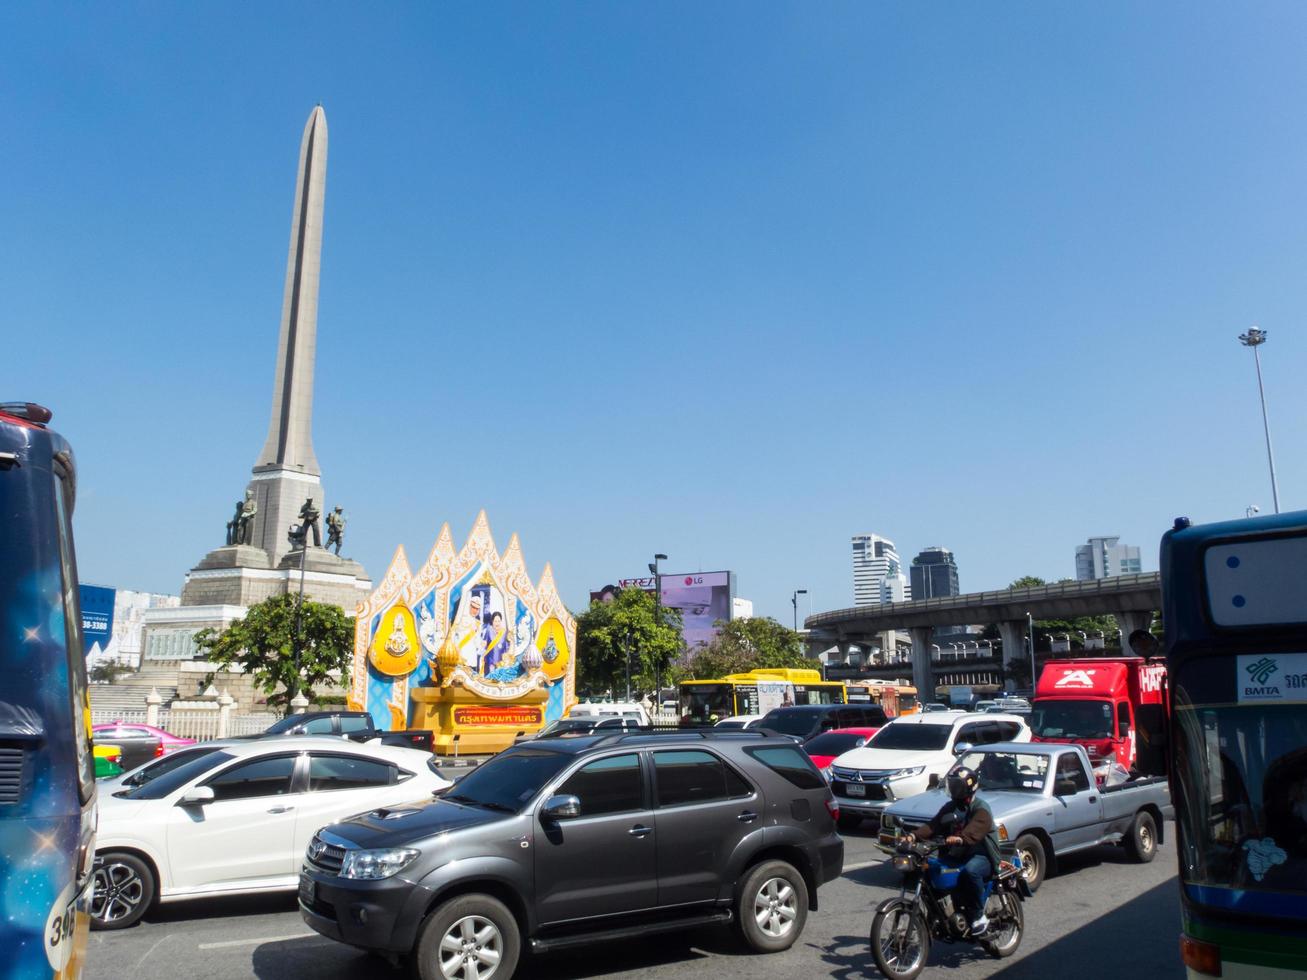 monumento da vitória bangkok tailândia30 de outubro de 2018o monumento da vitória foi construído para comemorar as batalhas heróicas da polícia e dos civis. naquela época 59 pessoas morreram. foto